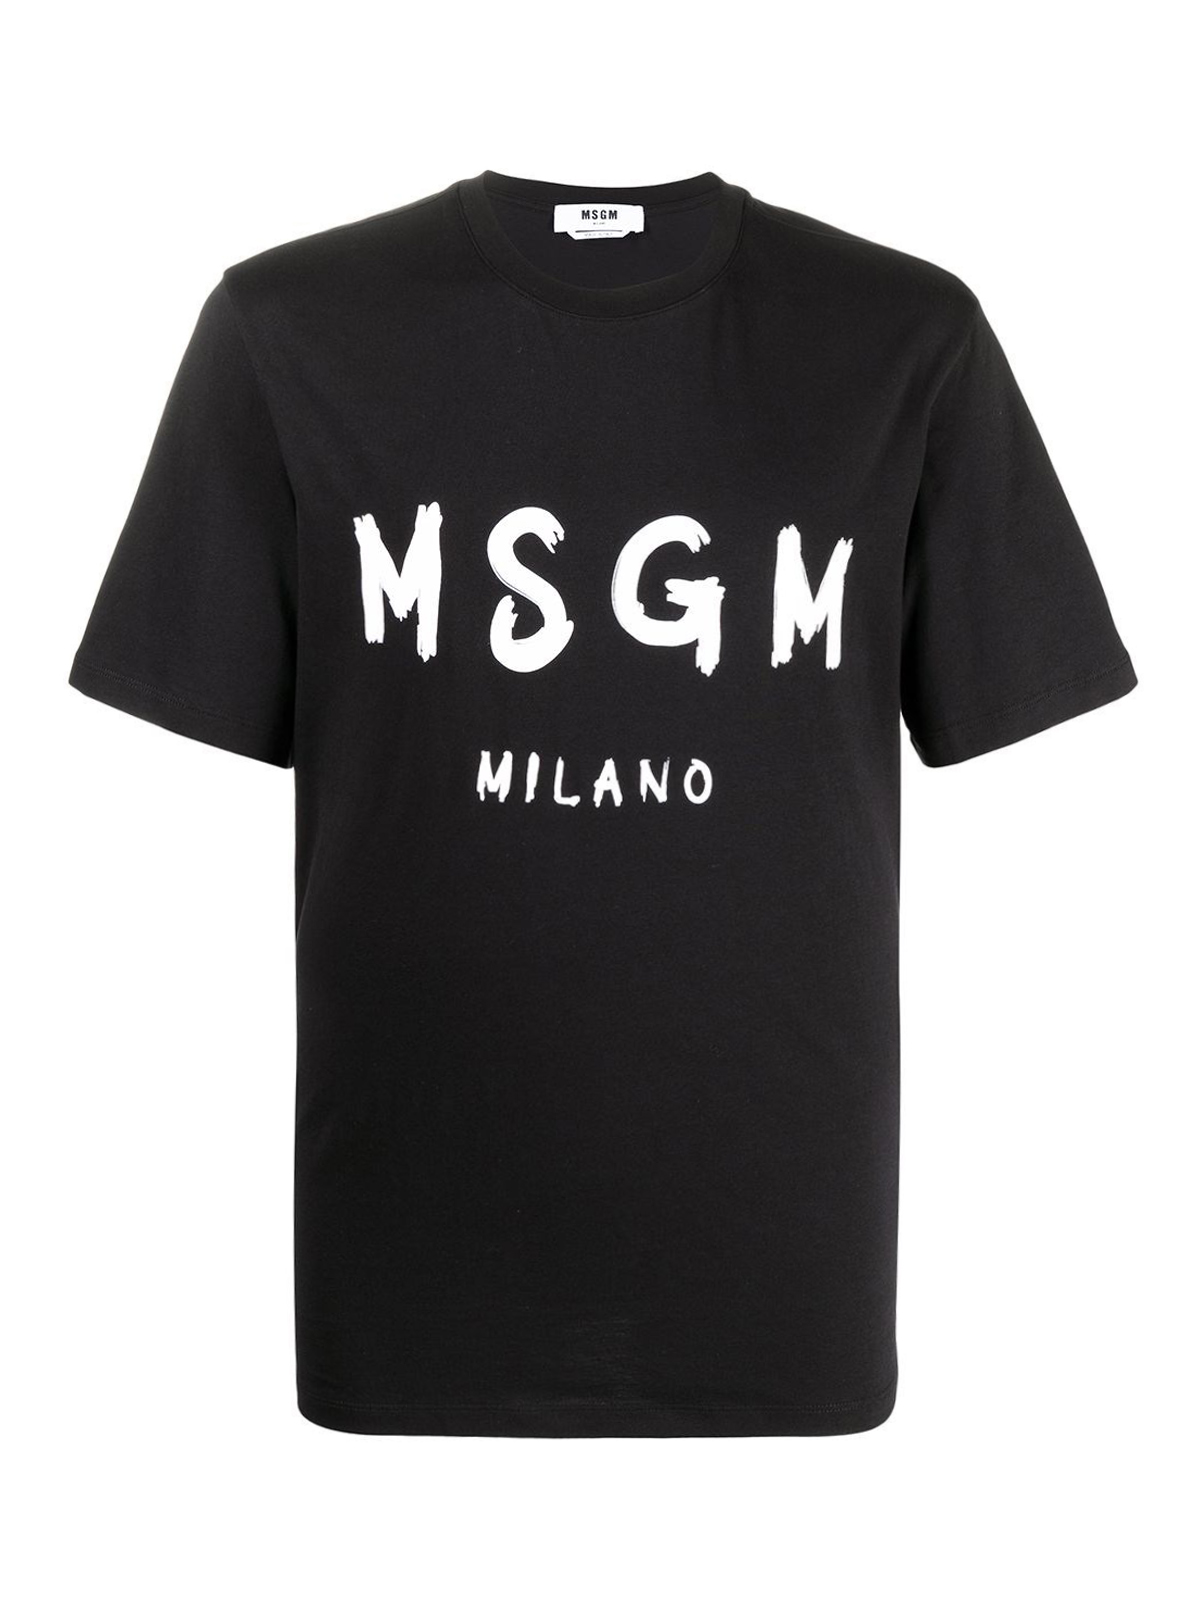 Tシャツ M.S.G.M. - Tシャツ - 黒 - 3040MM9721709899 | THEBS [iKRIX]